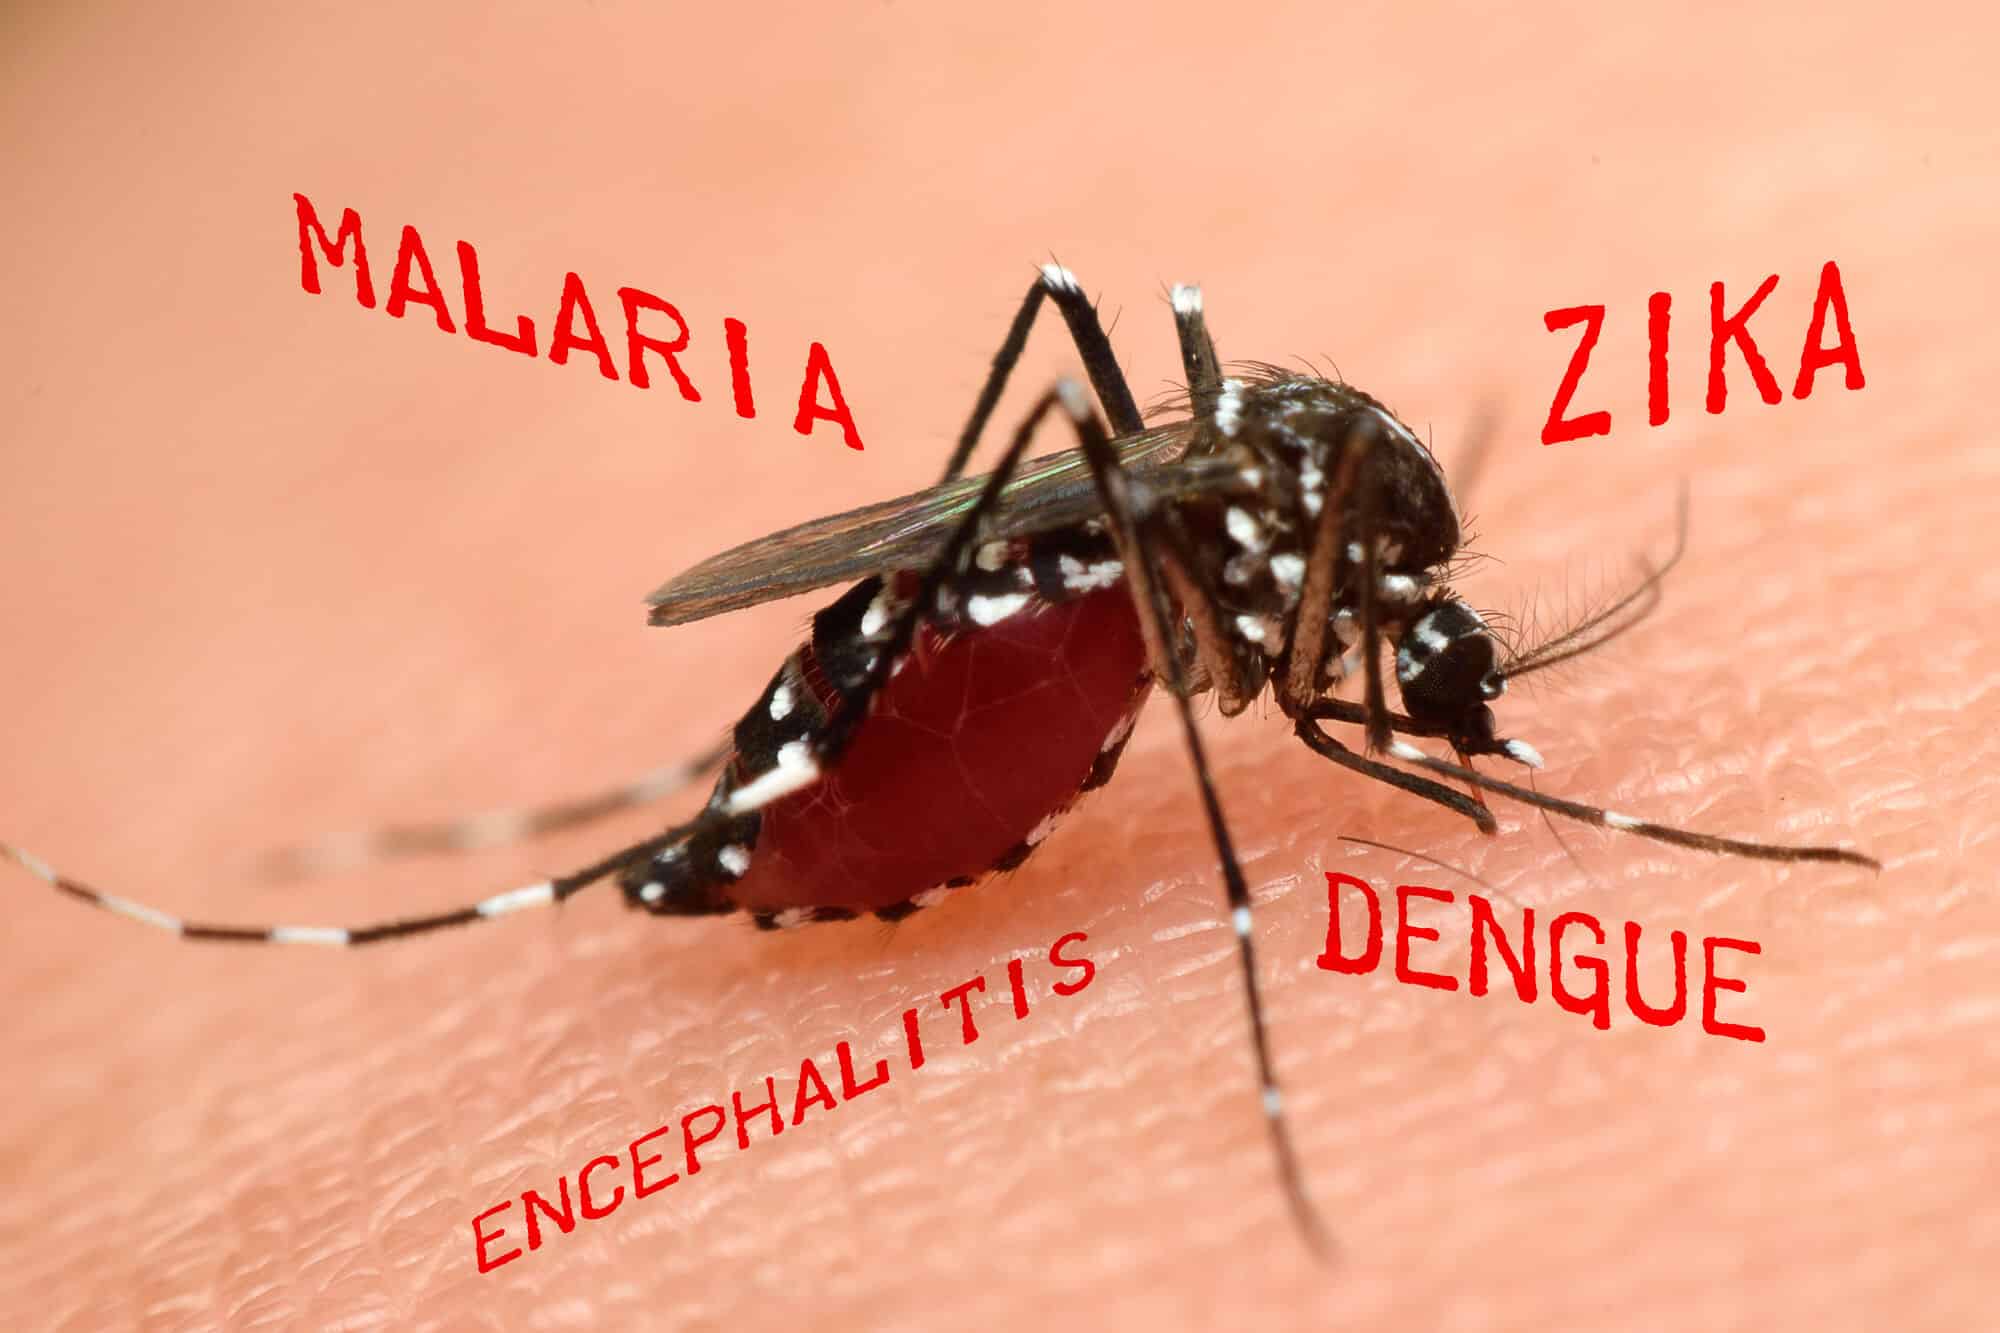 יתושים מוצצי דם, אחד ממעבירי המחלות המסוכנים ביותר. <a href="https://depositphotos.com">אילוסטרציה: depositphotos.com</a> 